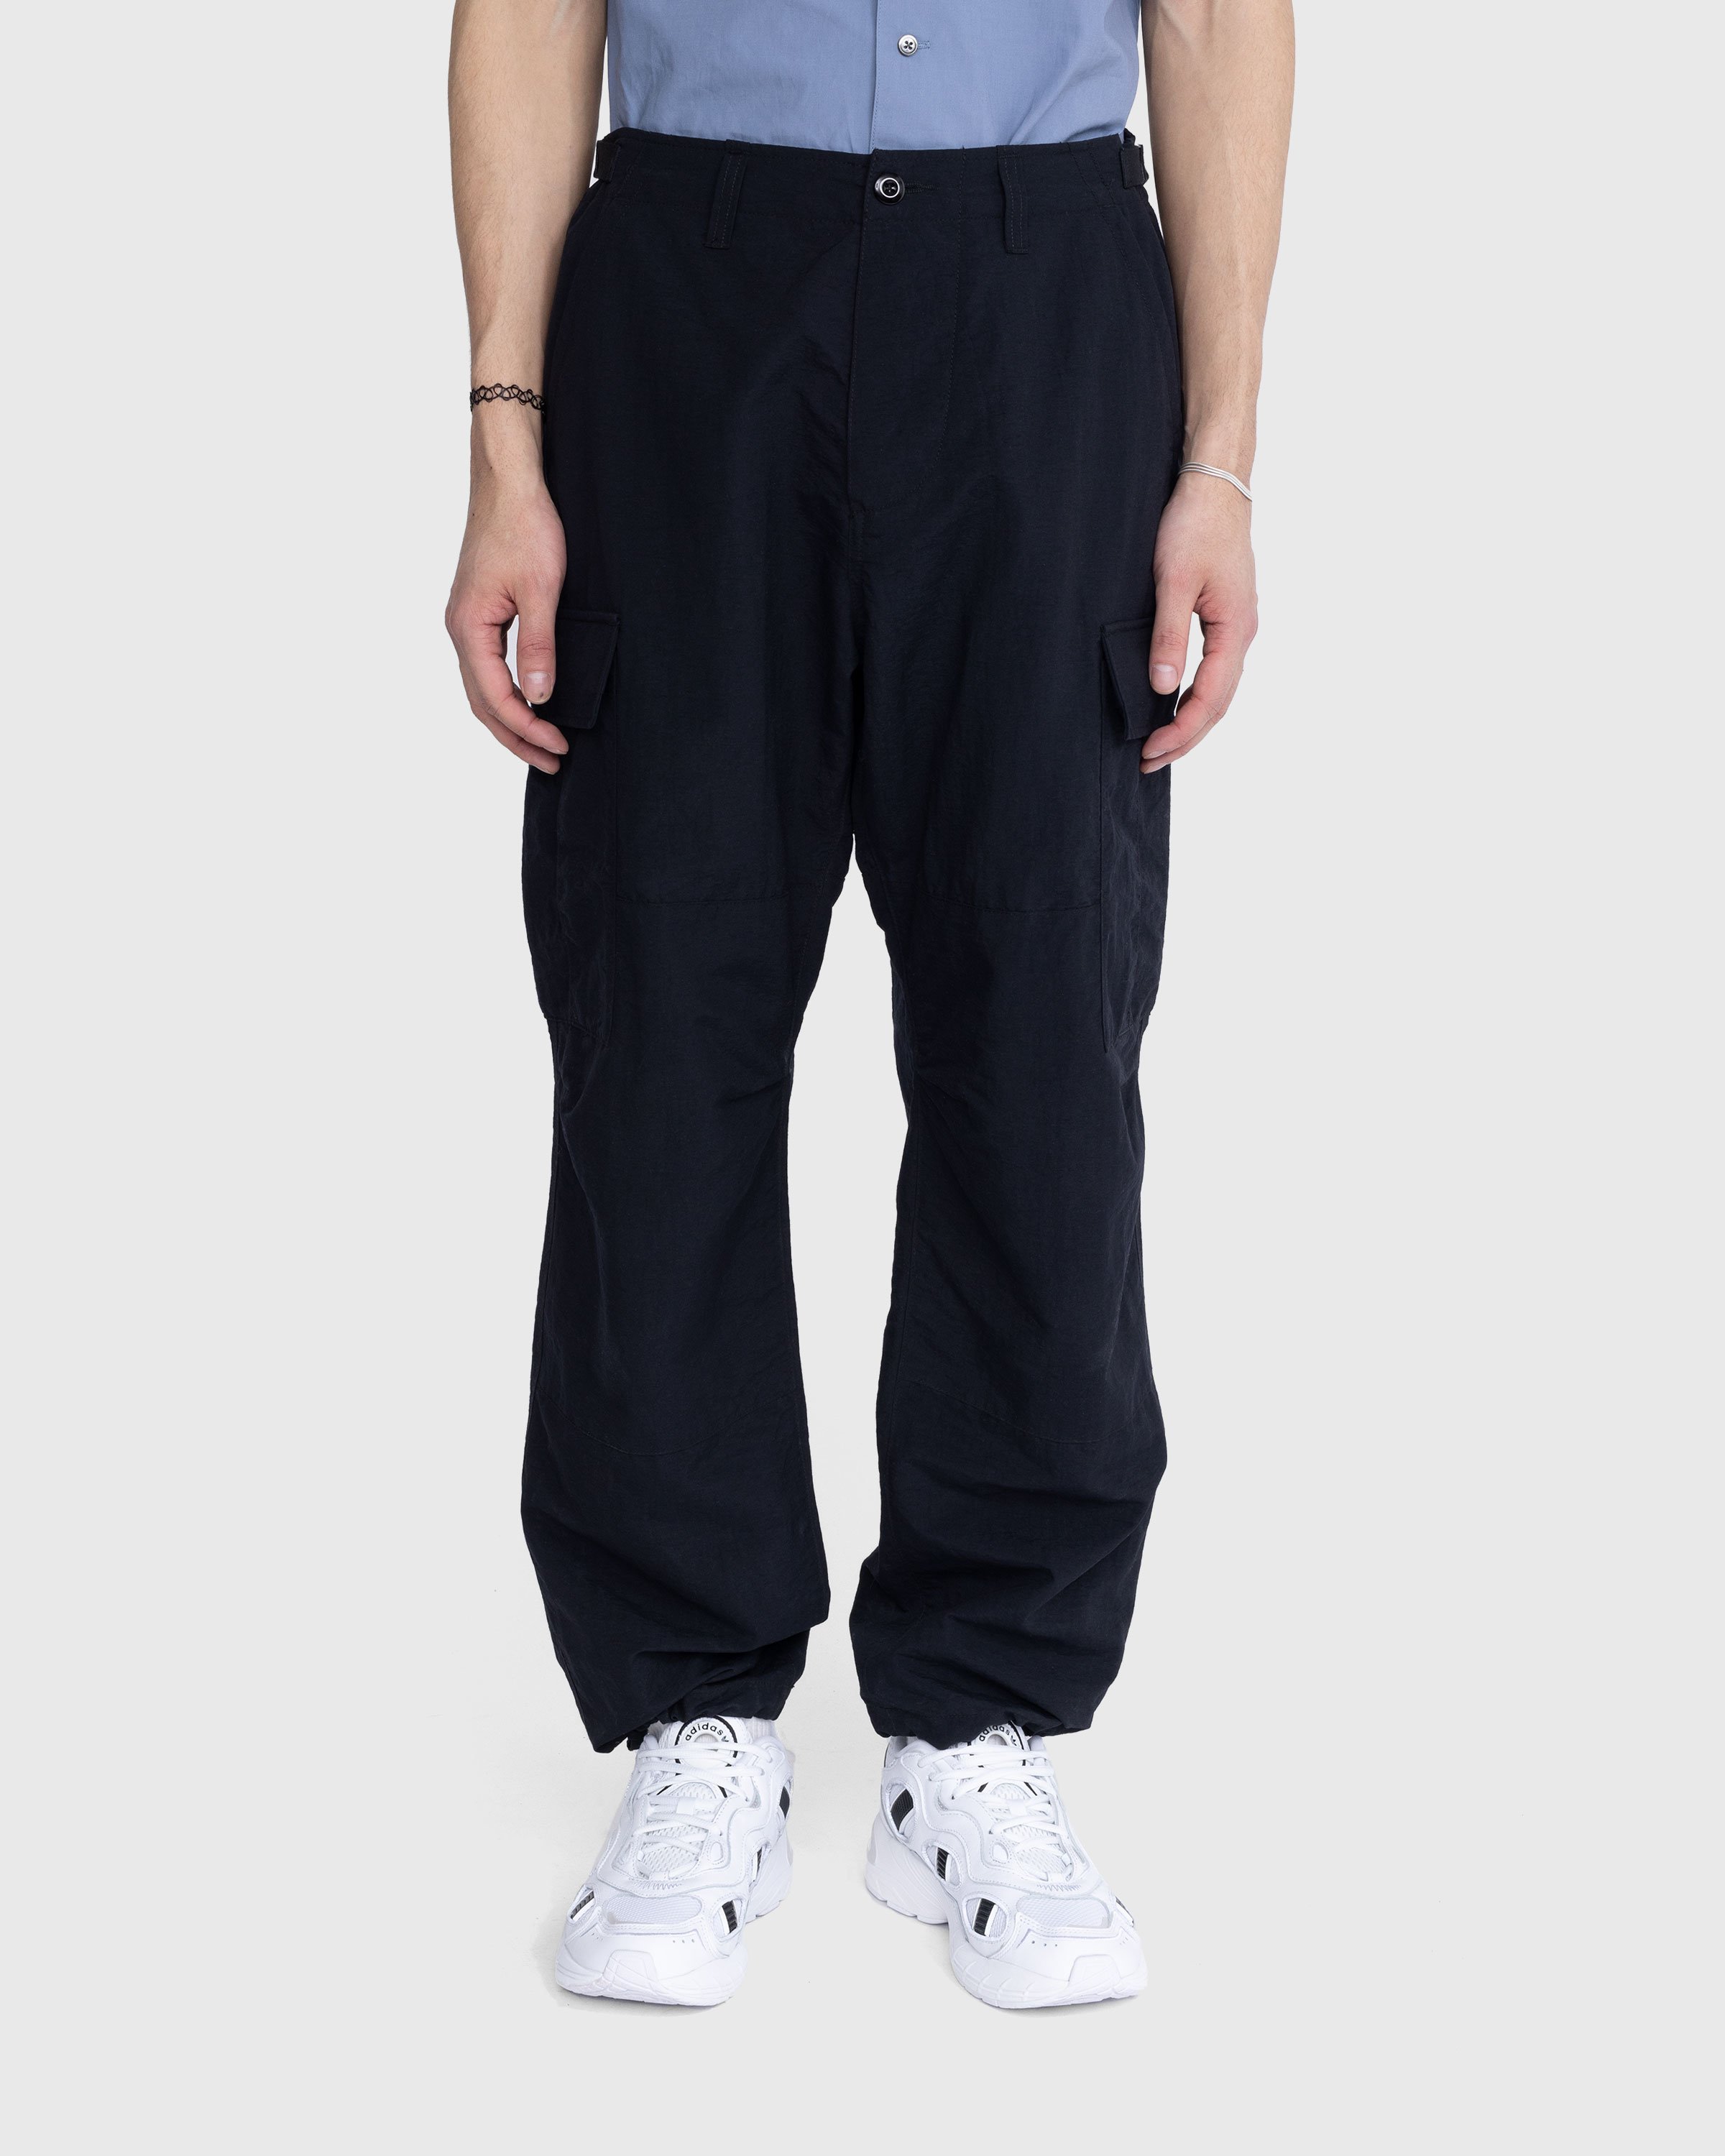 Highsnobiety - Nylon Cargo Pants Black - Clothing - Black - Image 2